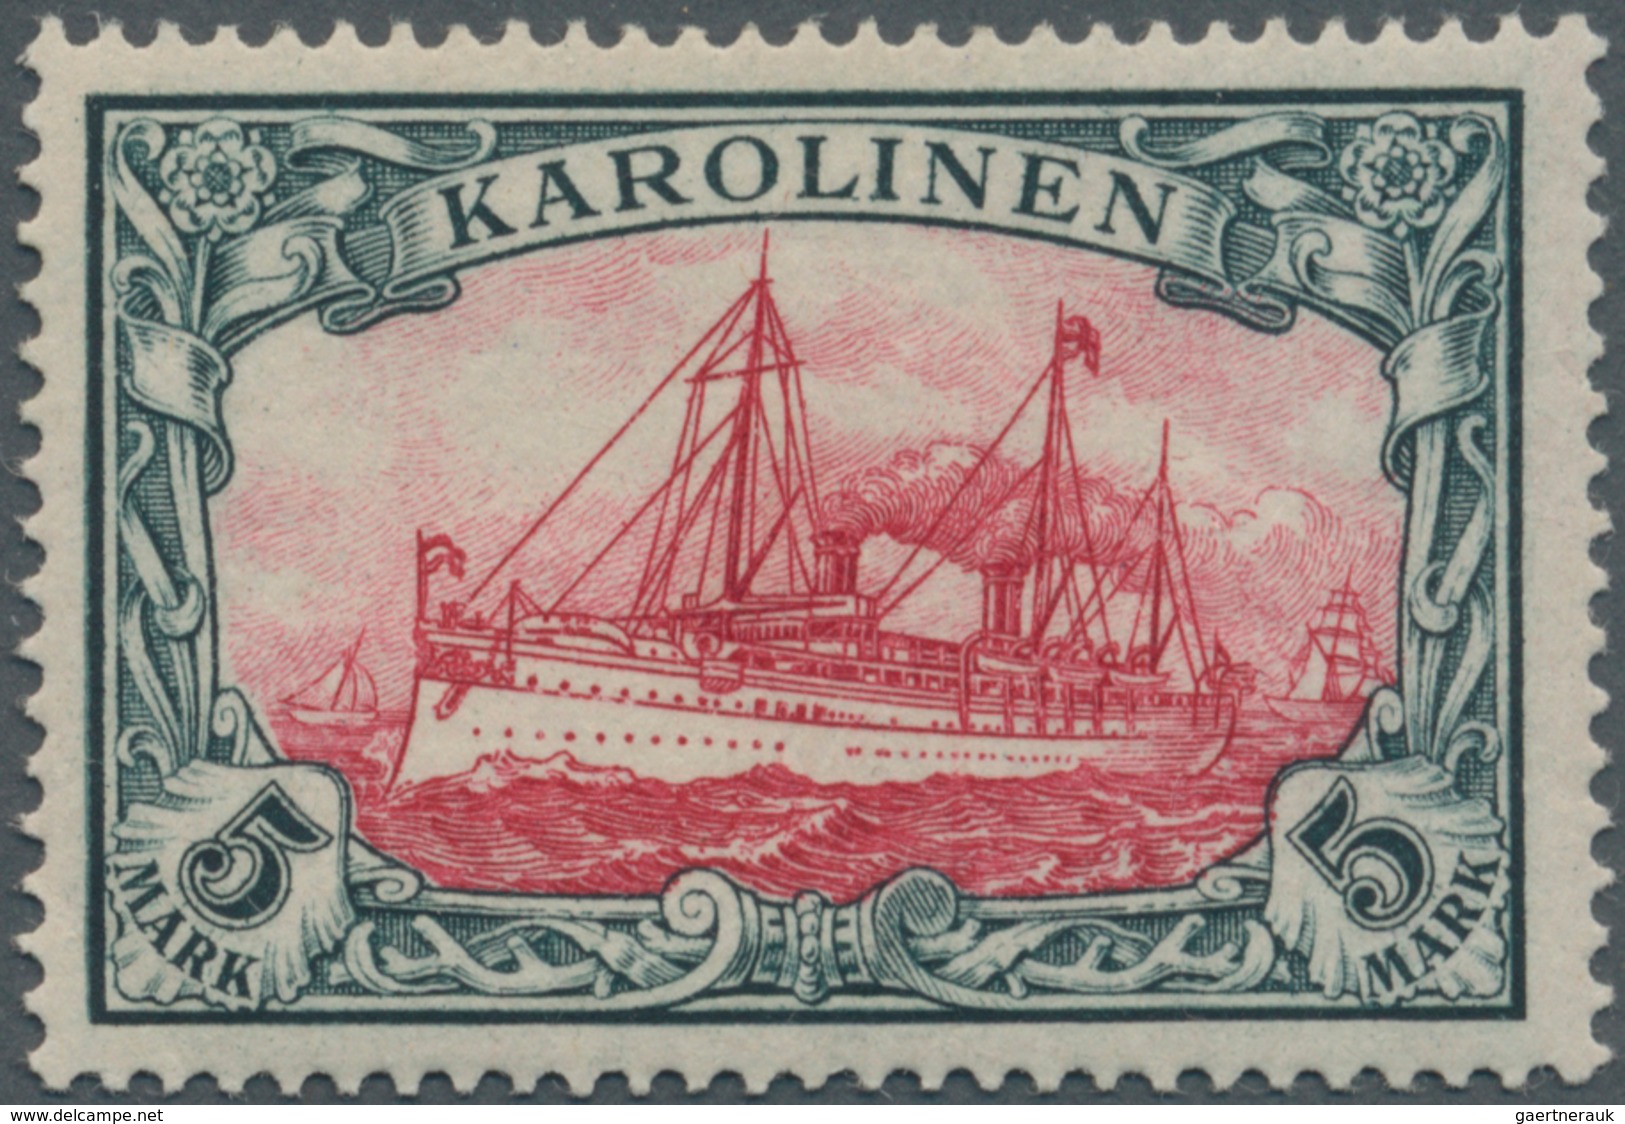 Deutsche Kolonien - Karolinen: 1900, 5 M Grünschwarz/dunkelkarmin Kaiseryacht, O.Wz., Postfrisch Pra - Isole Caroline